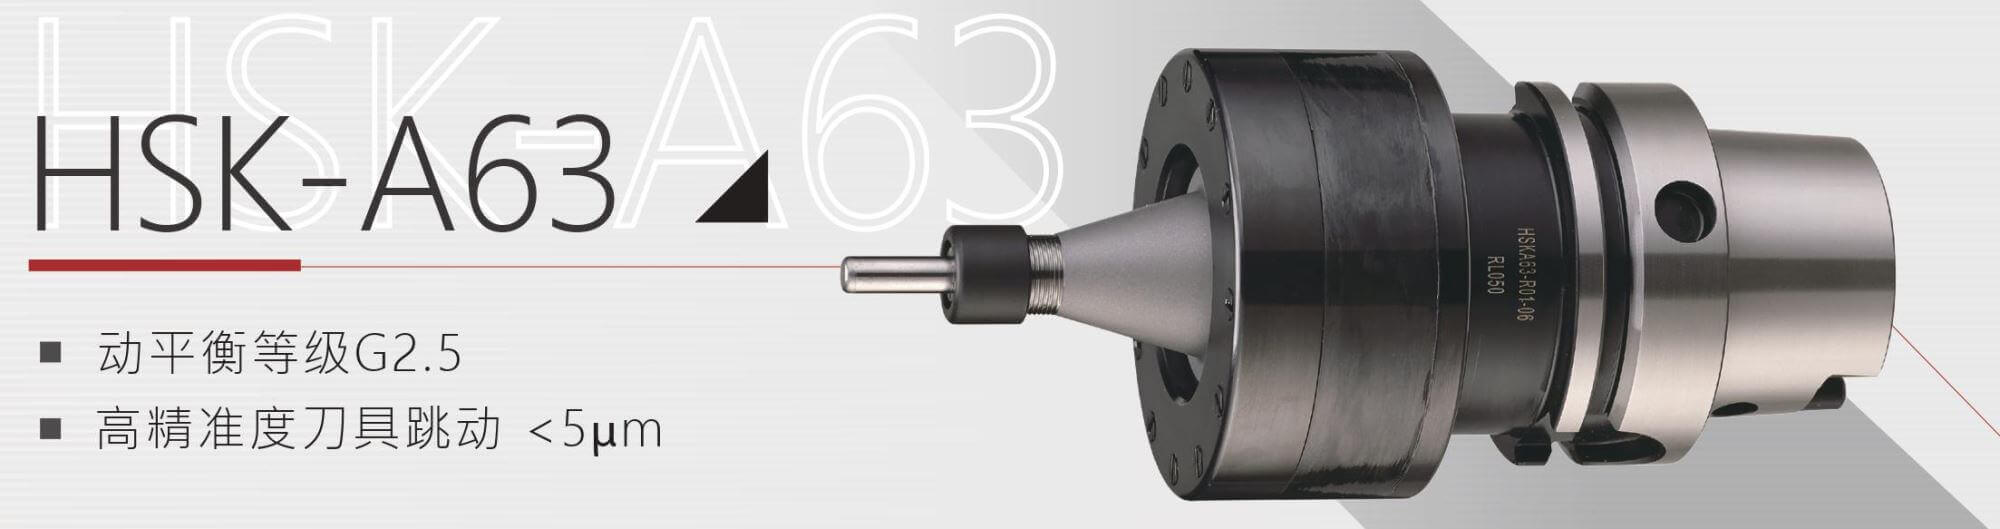 超声波刀把HSK-A63产品介绍图-汉鼎智慧科技